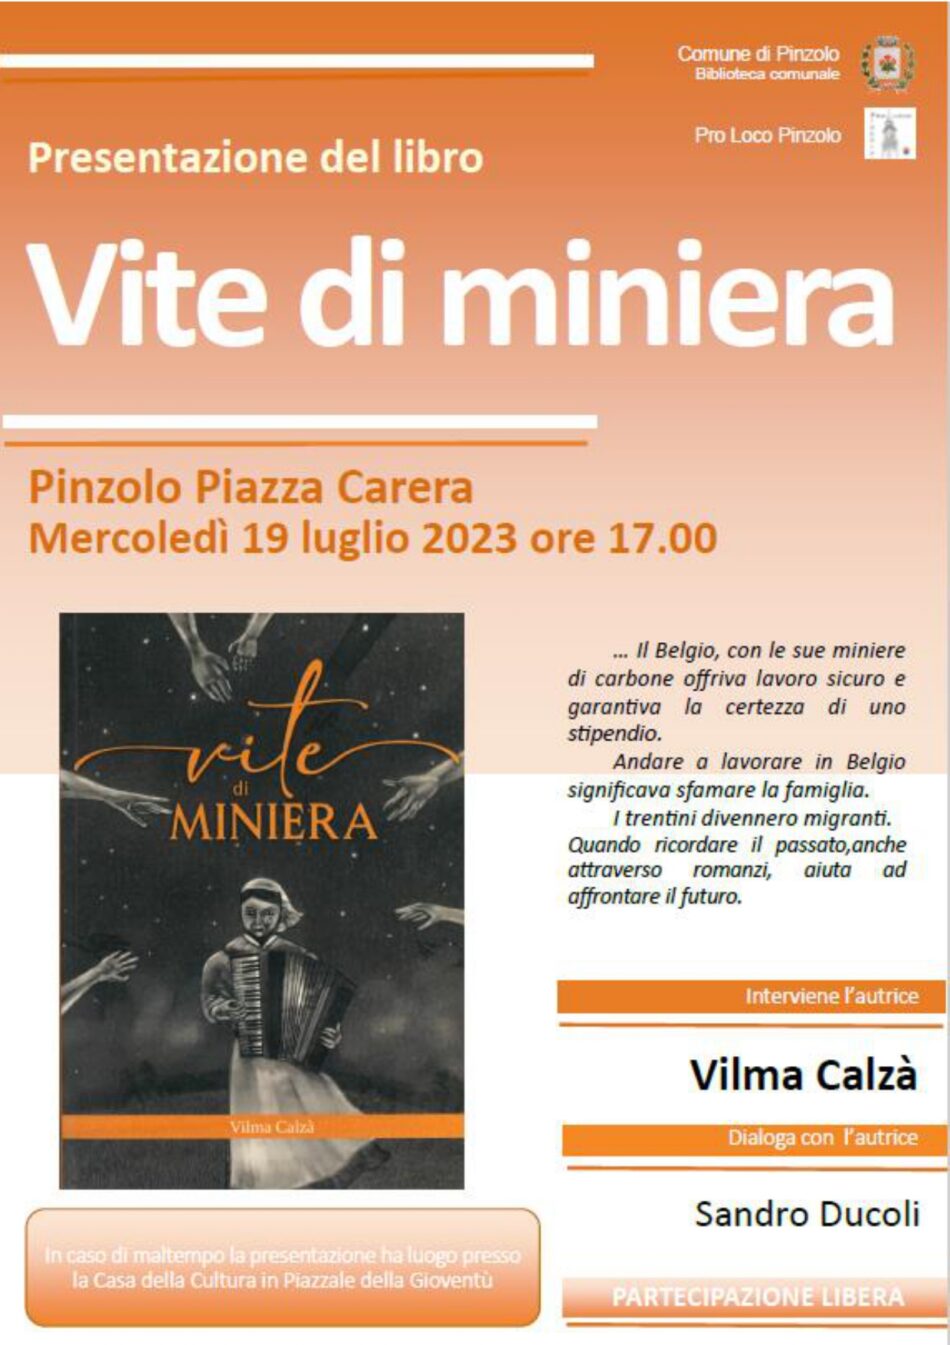 Pinzolo Mercoledì 19 luglio ore 17.00 – Presentazione del libro “VITE IN MINIERA” in Piazza Carera